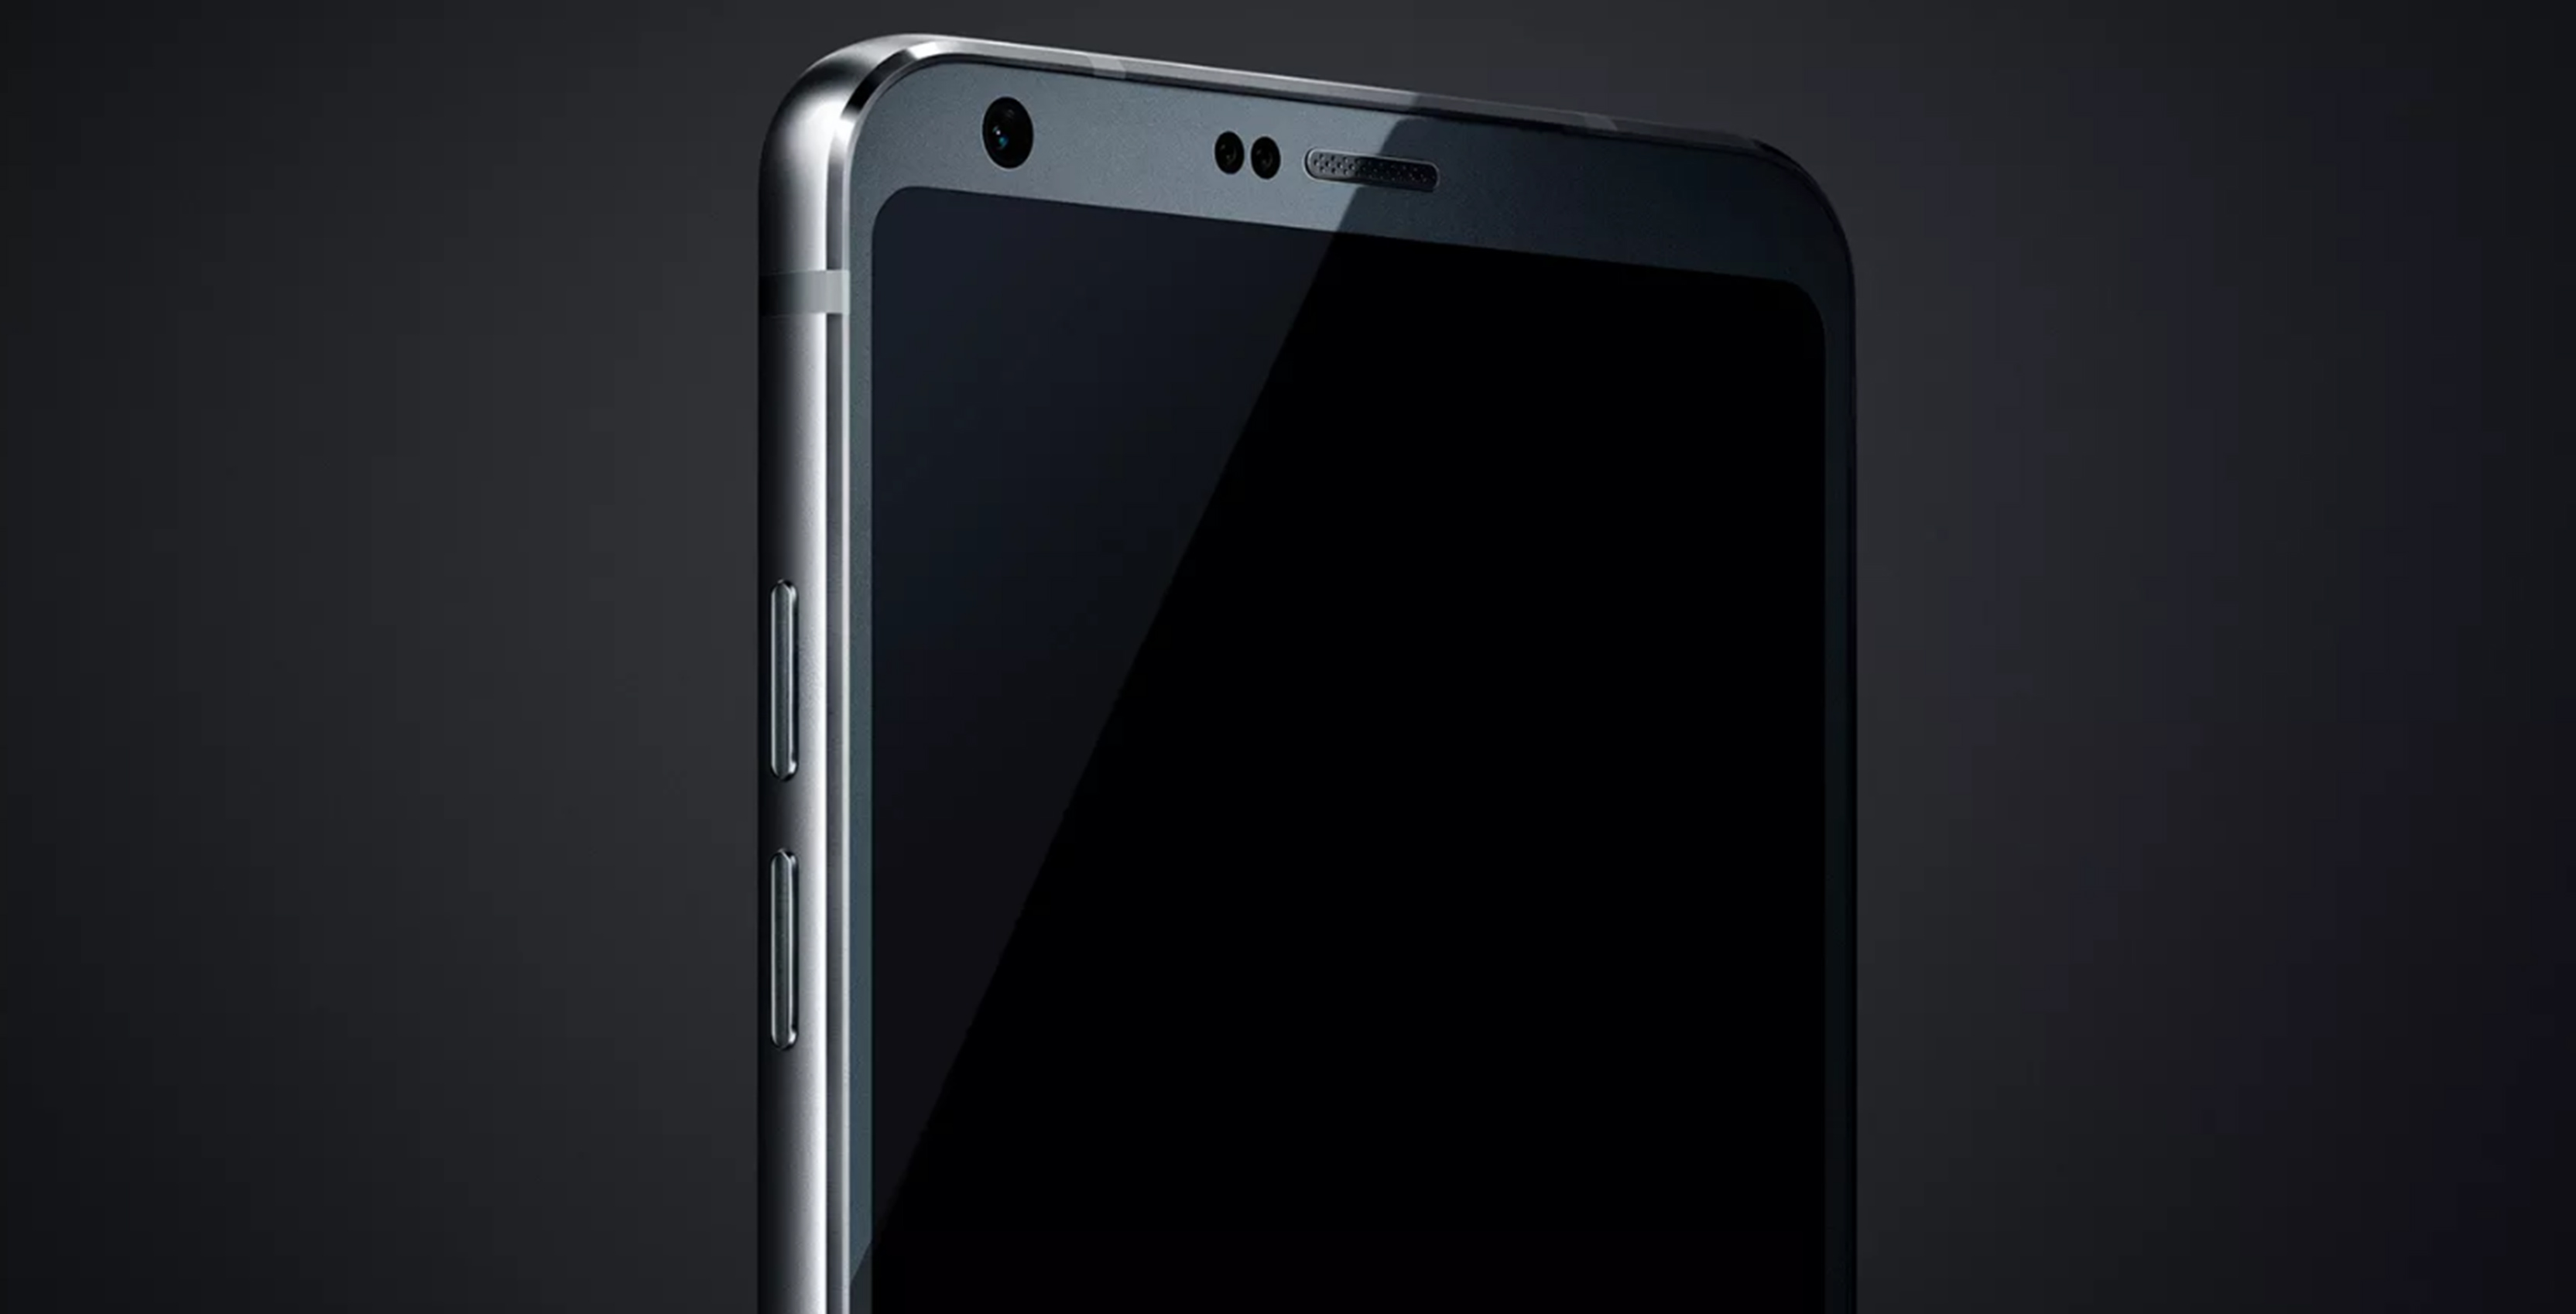 LG G6 leaked image